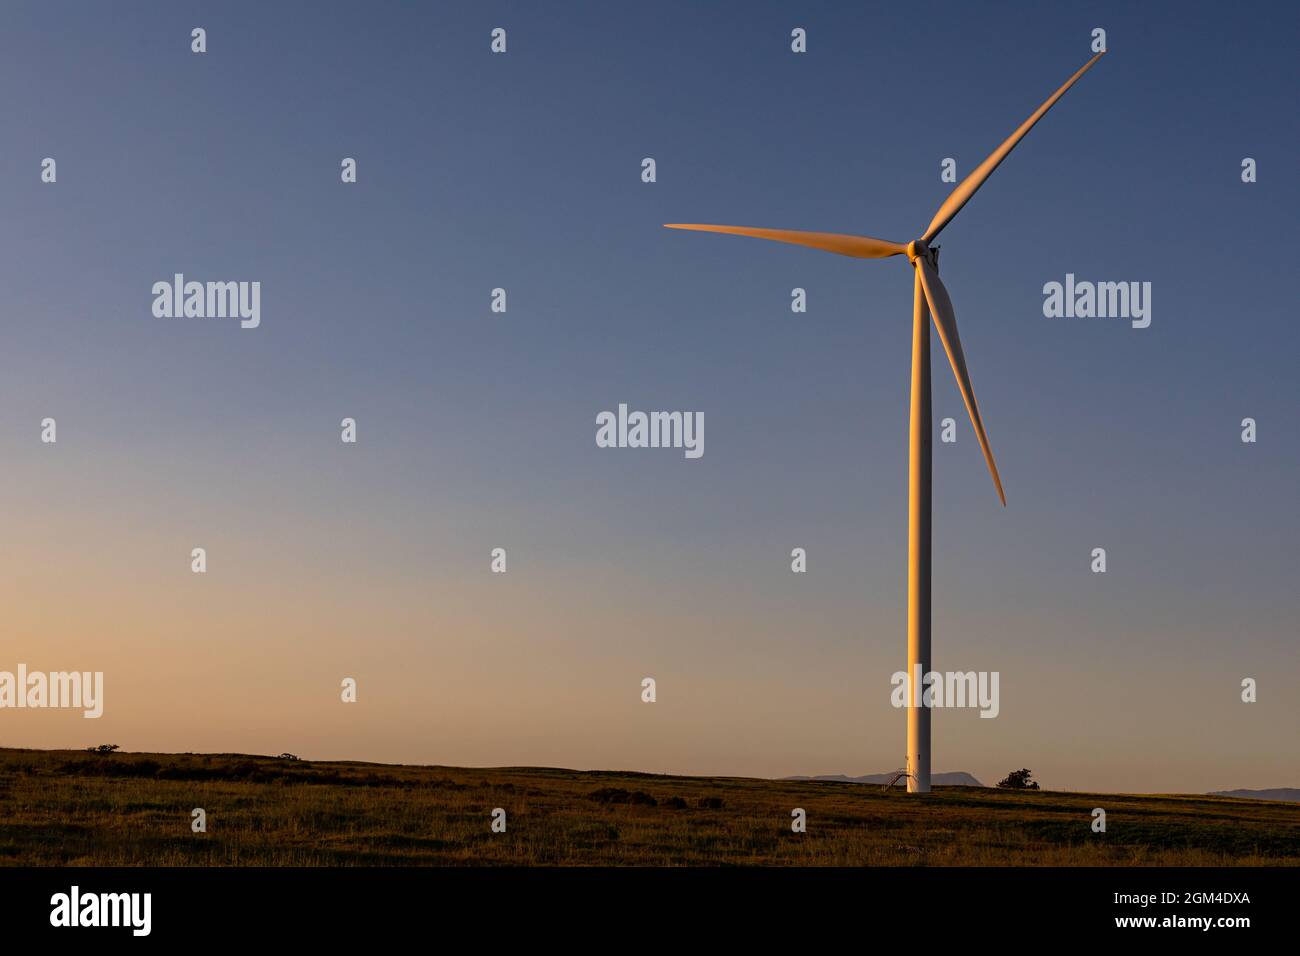 Vue générale de l'éolienne dans le paysage de campagne pendant le coucher du soleil Banque D'Images